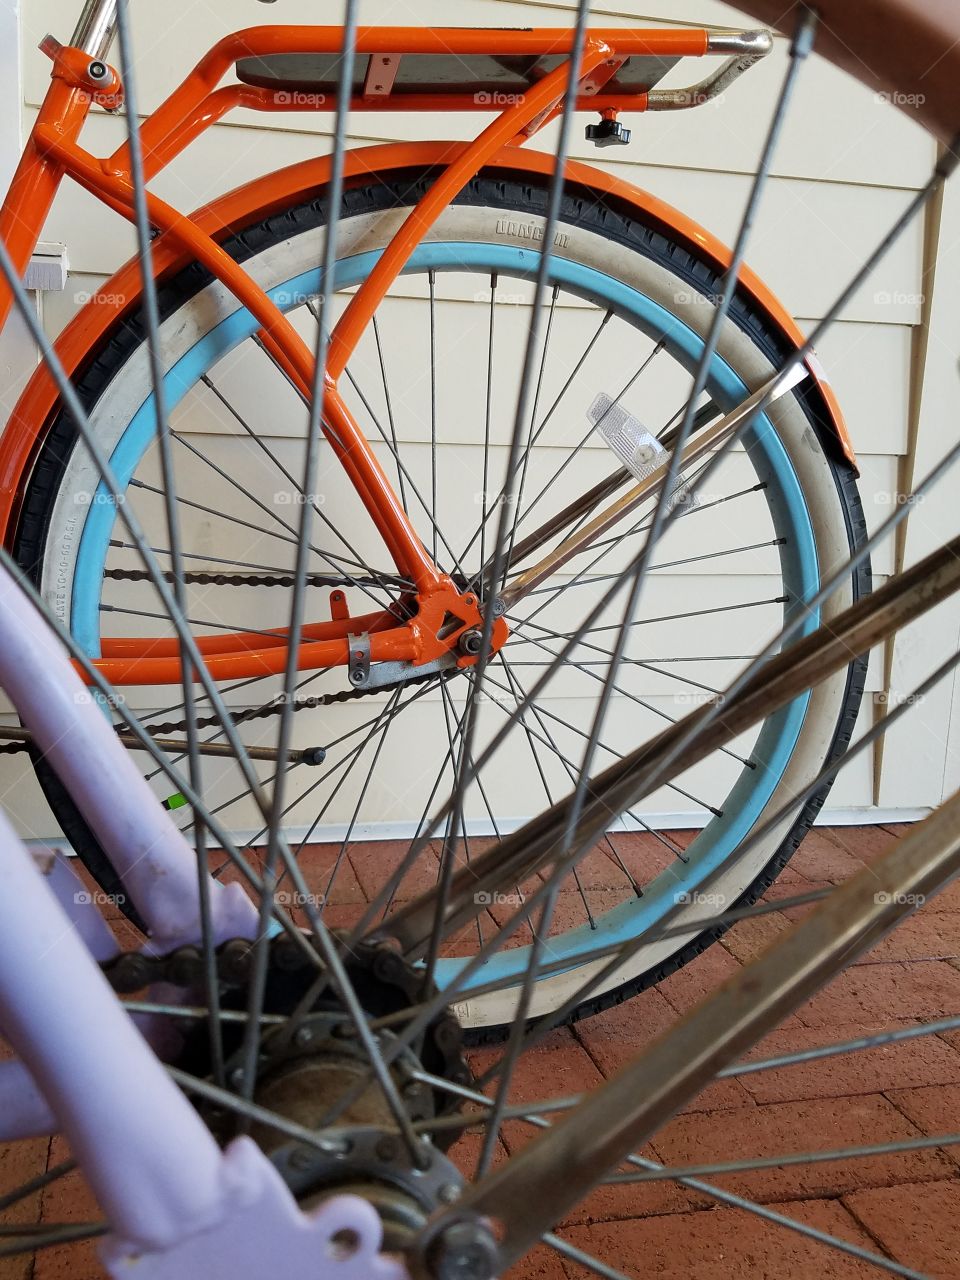 Bike spokes and wheel